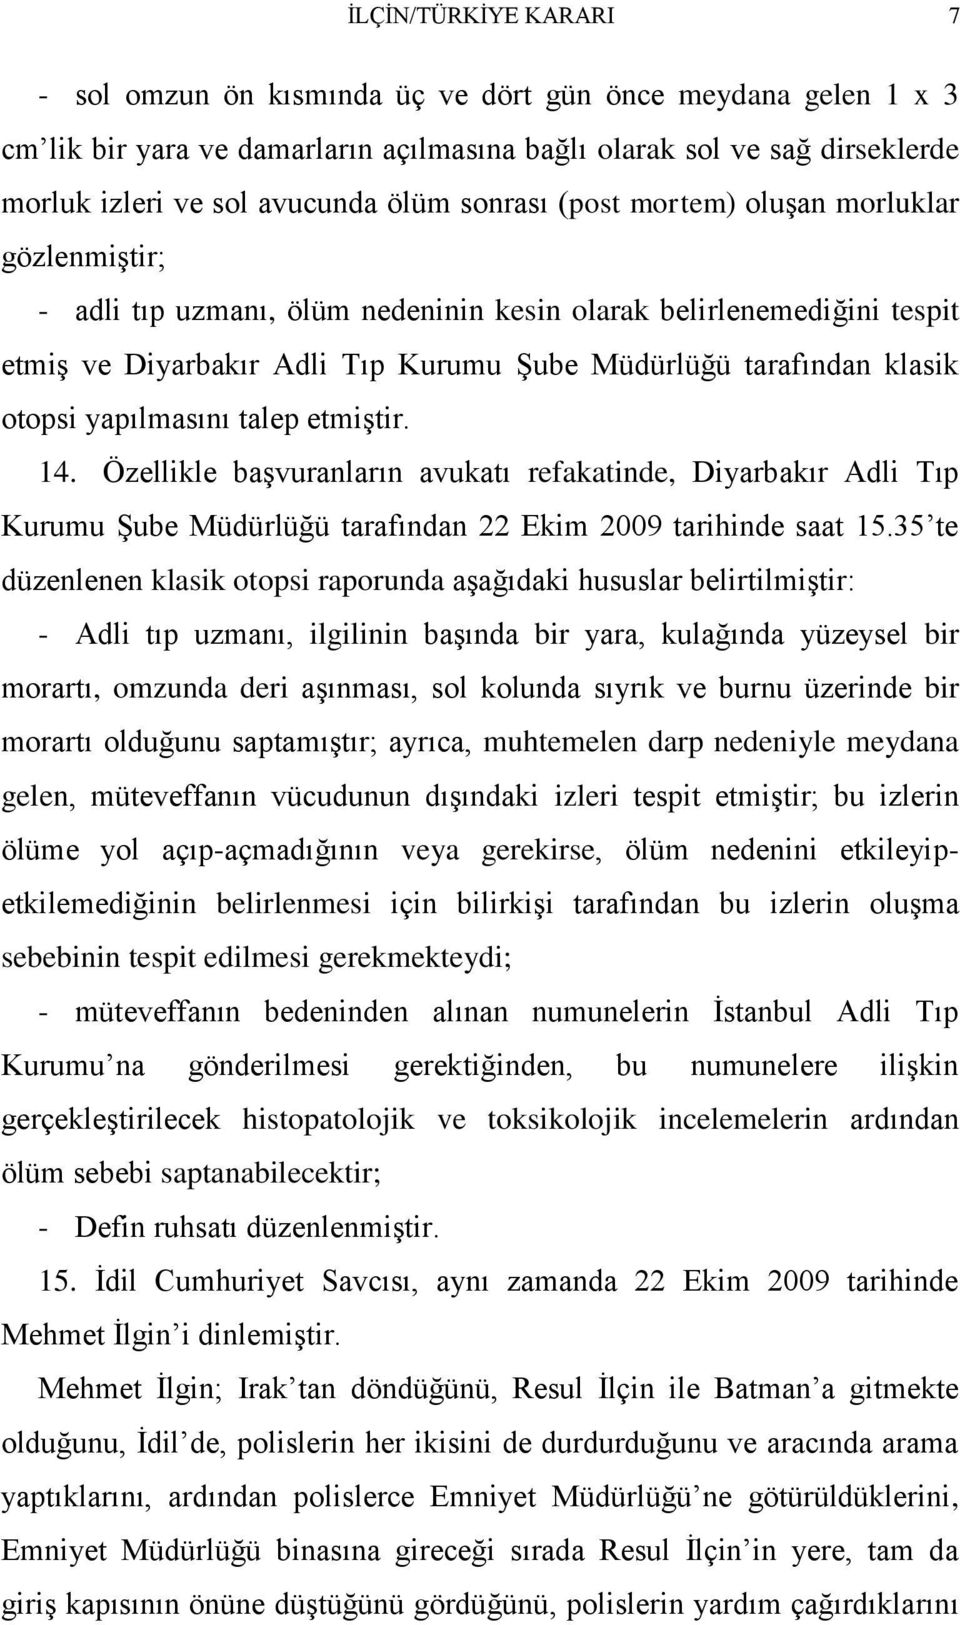 otopsi yapılmasını talep etmiştir. 14. Özellikle başvuranların avukatı refakatinde, Diyarbakır Adli Tıp Kurumu Şube Müdürlüğü tarafından 22 Ekim 2009 tarihinde saat 15.